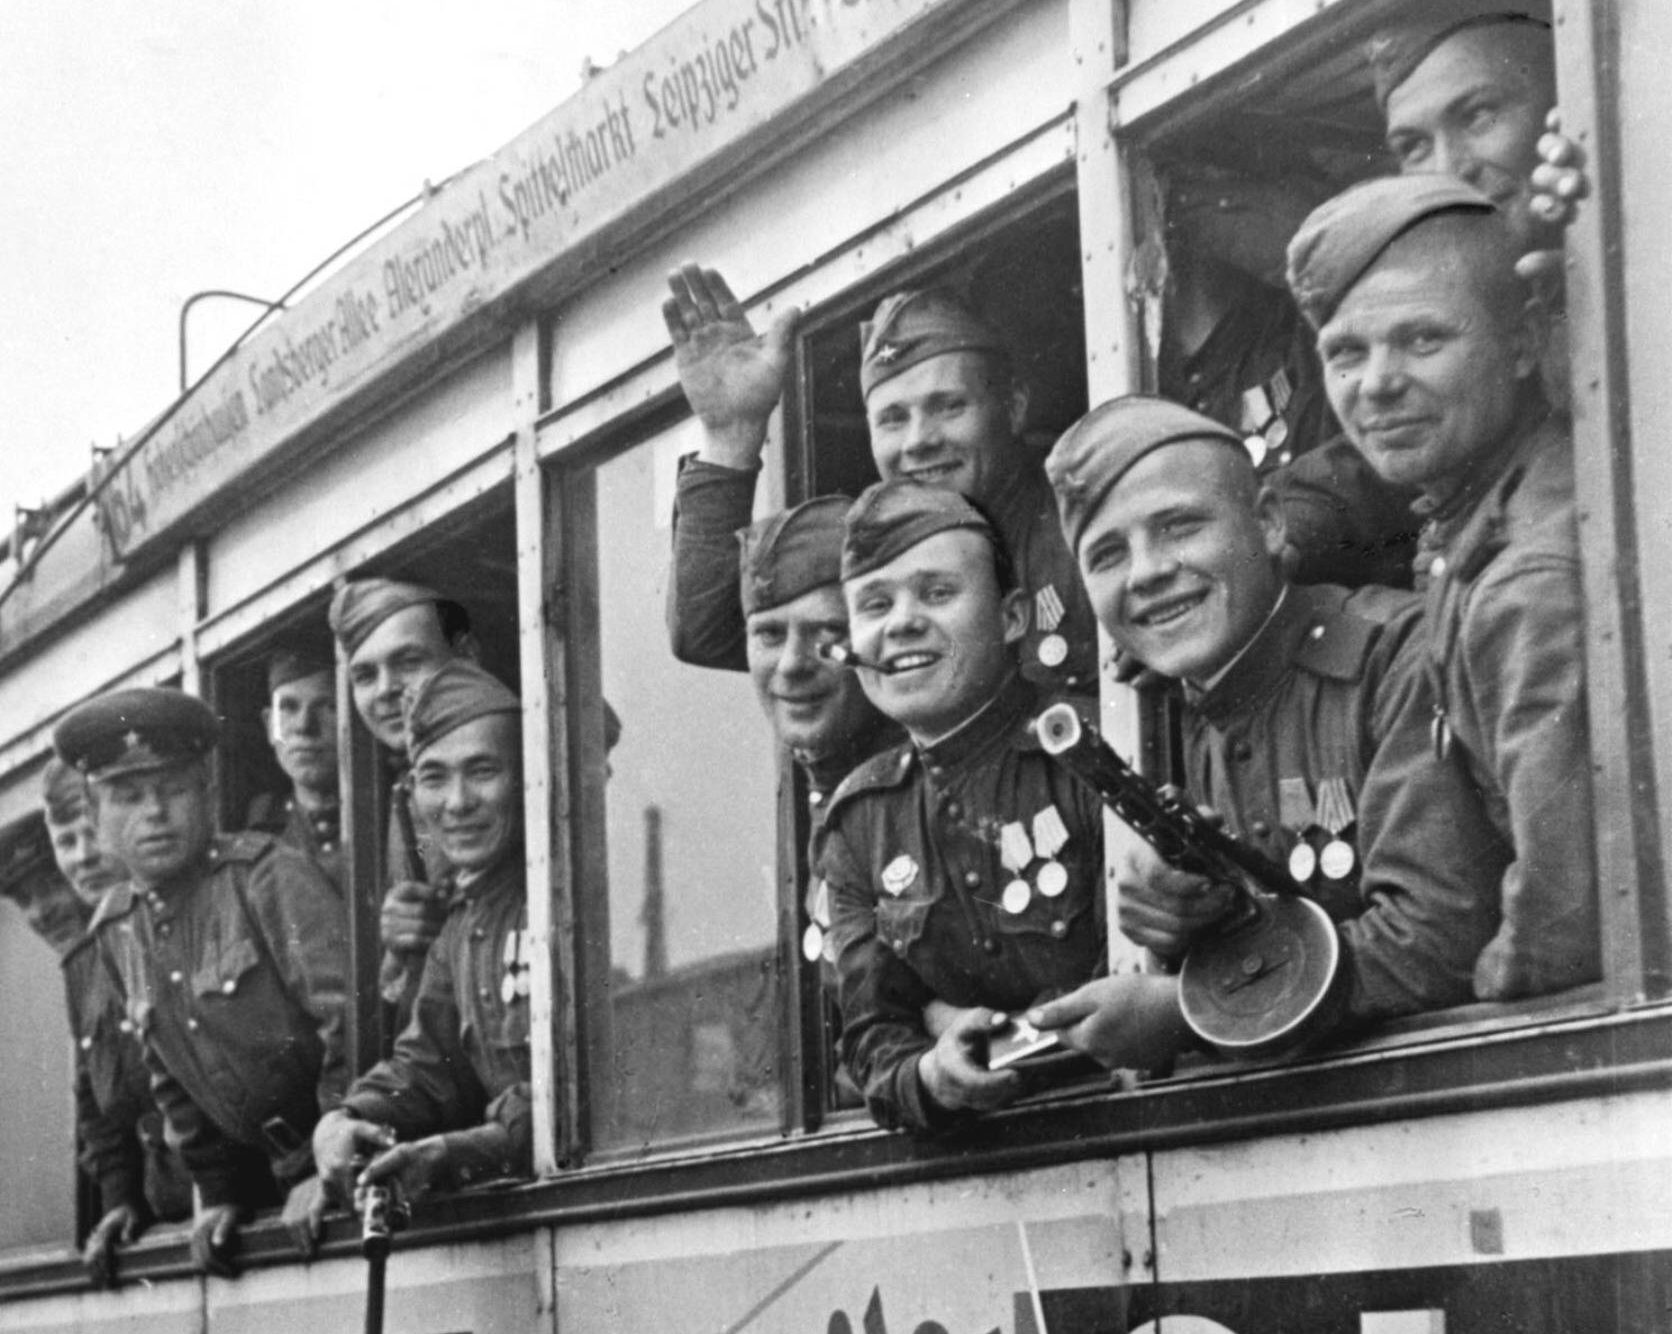 Soldaten der Roten Armee in einer Straßenbahn, Berlin im Mai 1945. Foto: Imago/Itar-Tass